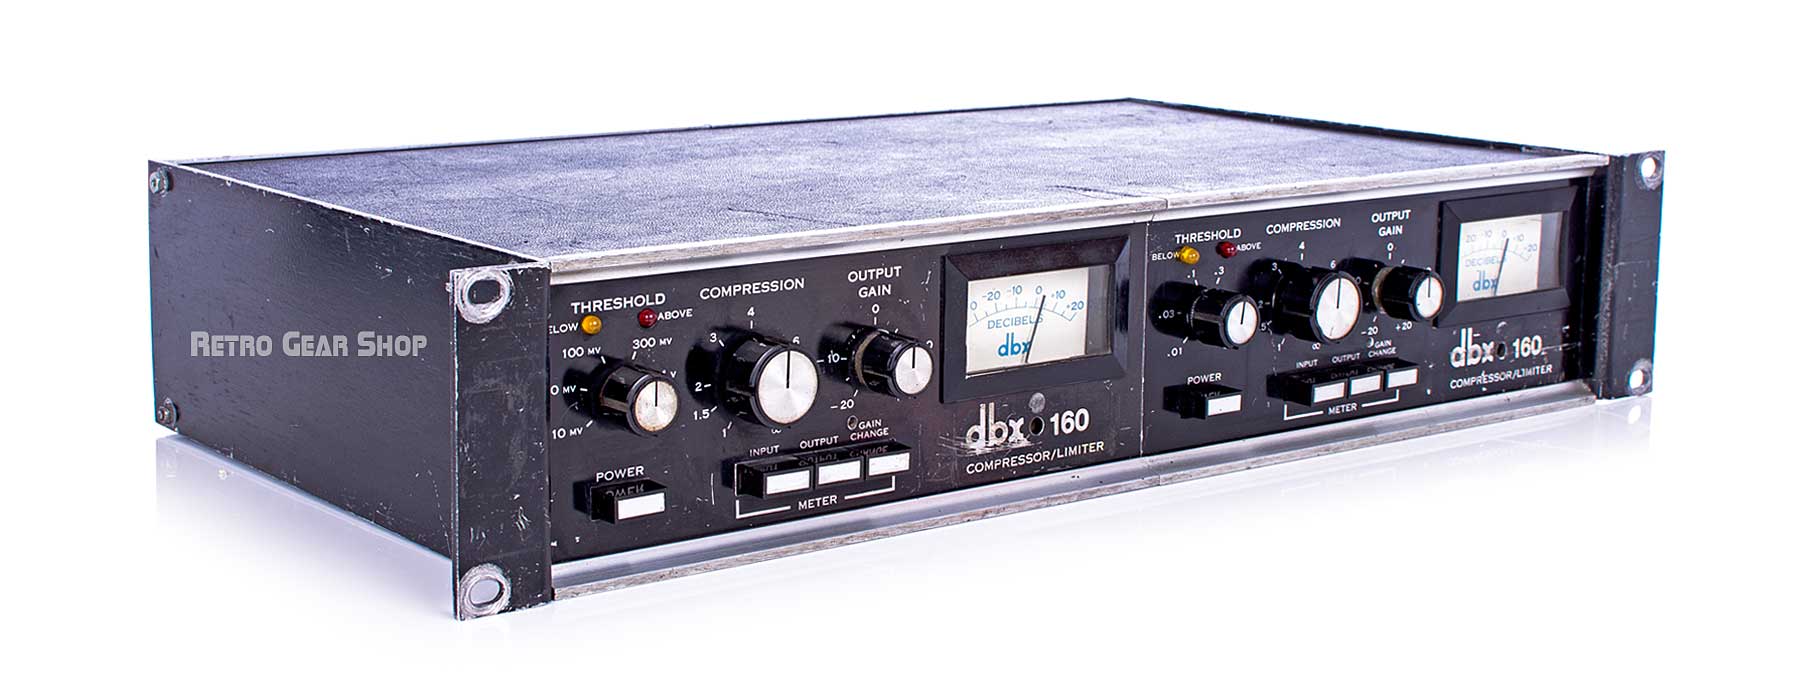 dbx 160VU Compressor / Limiter Stereo Pair Top Left